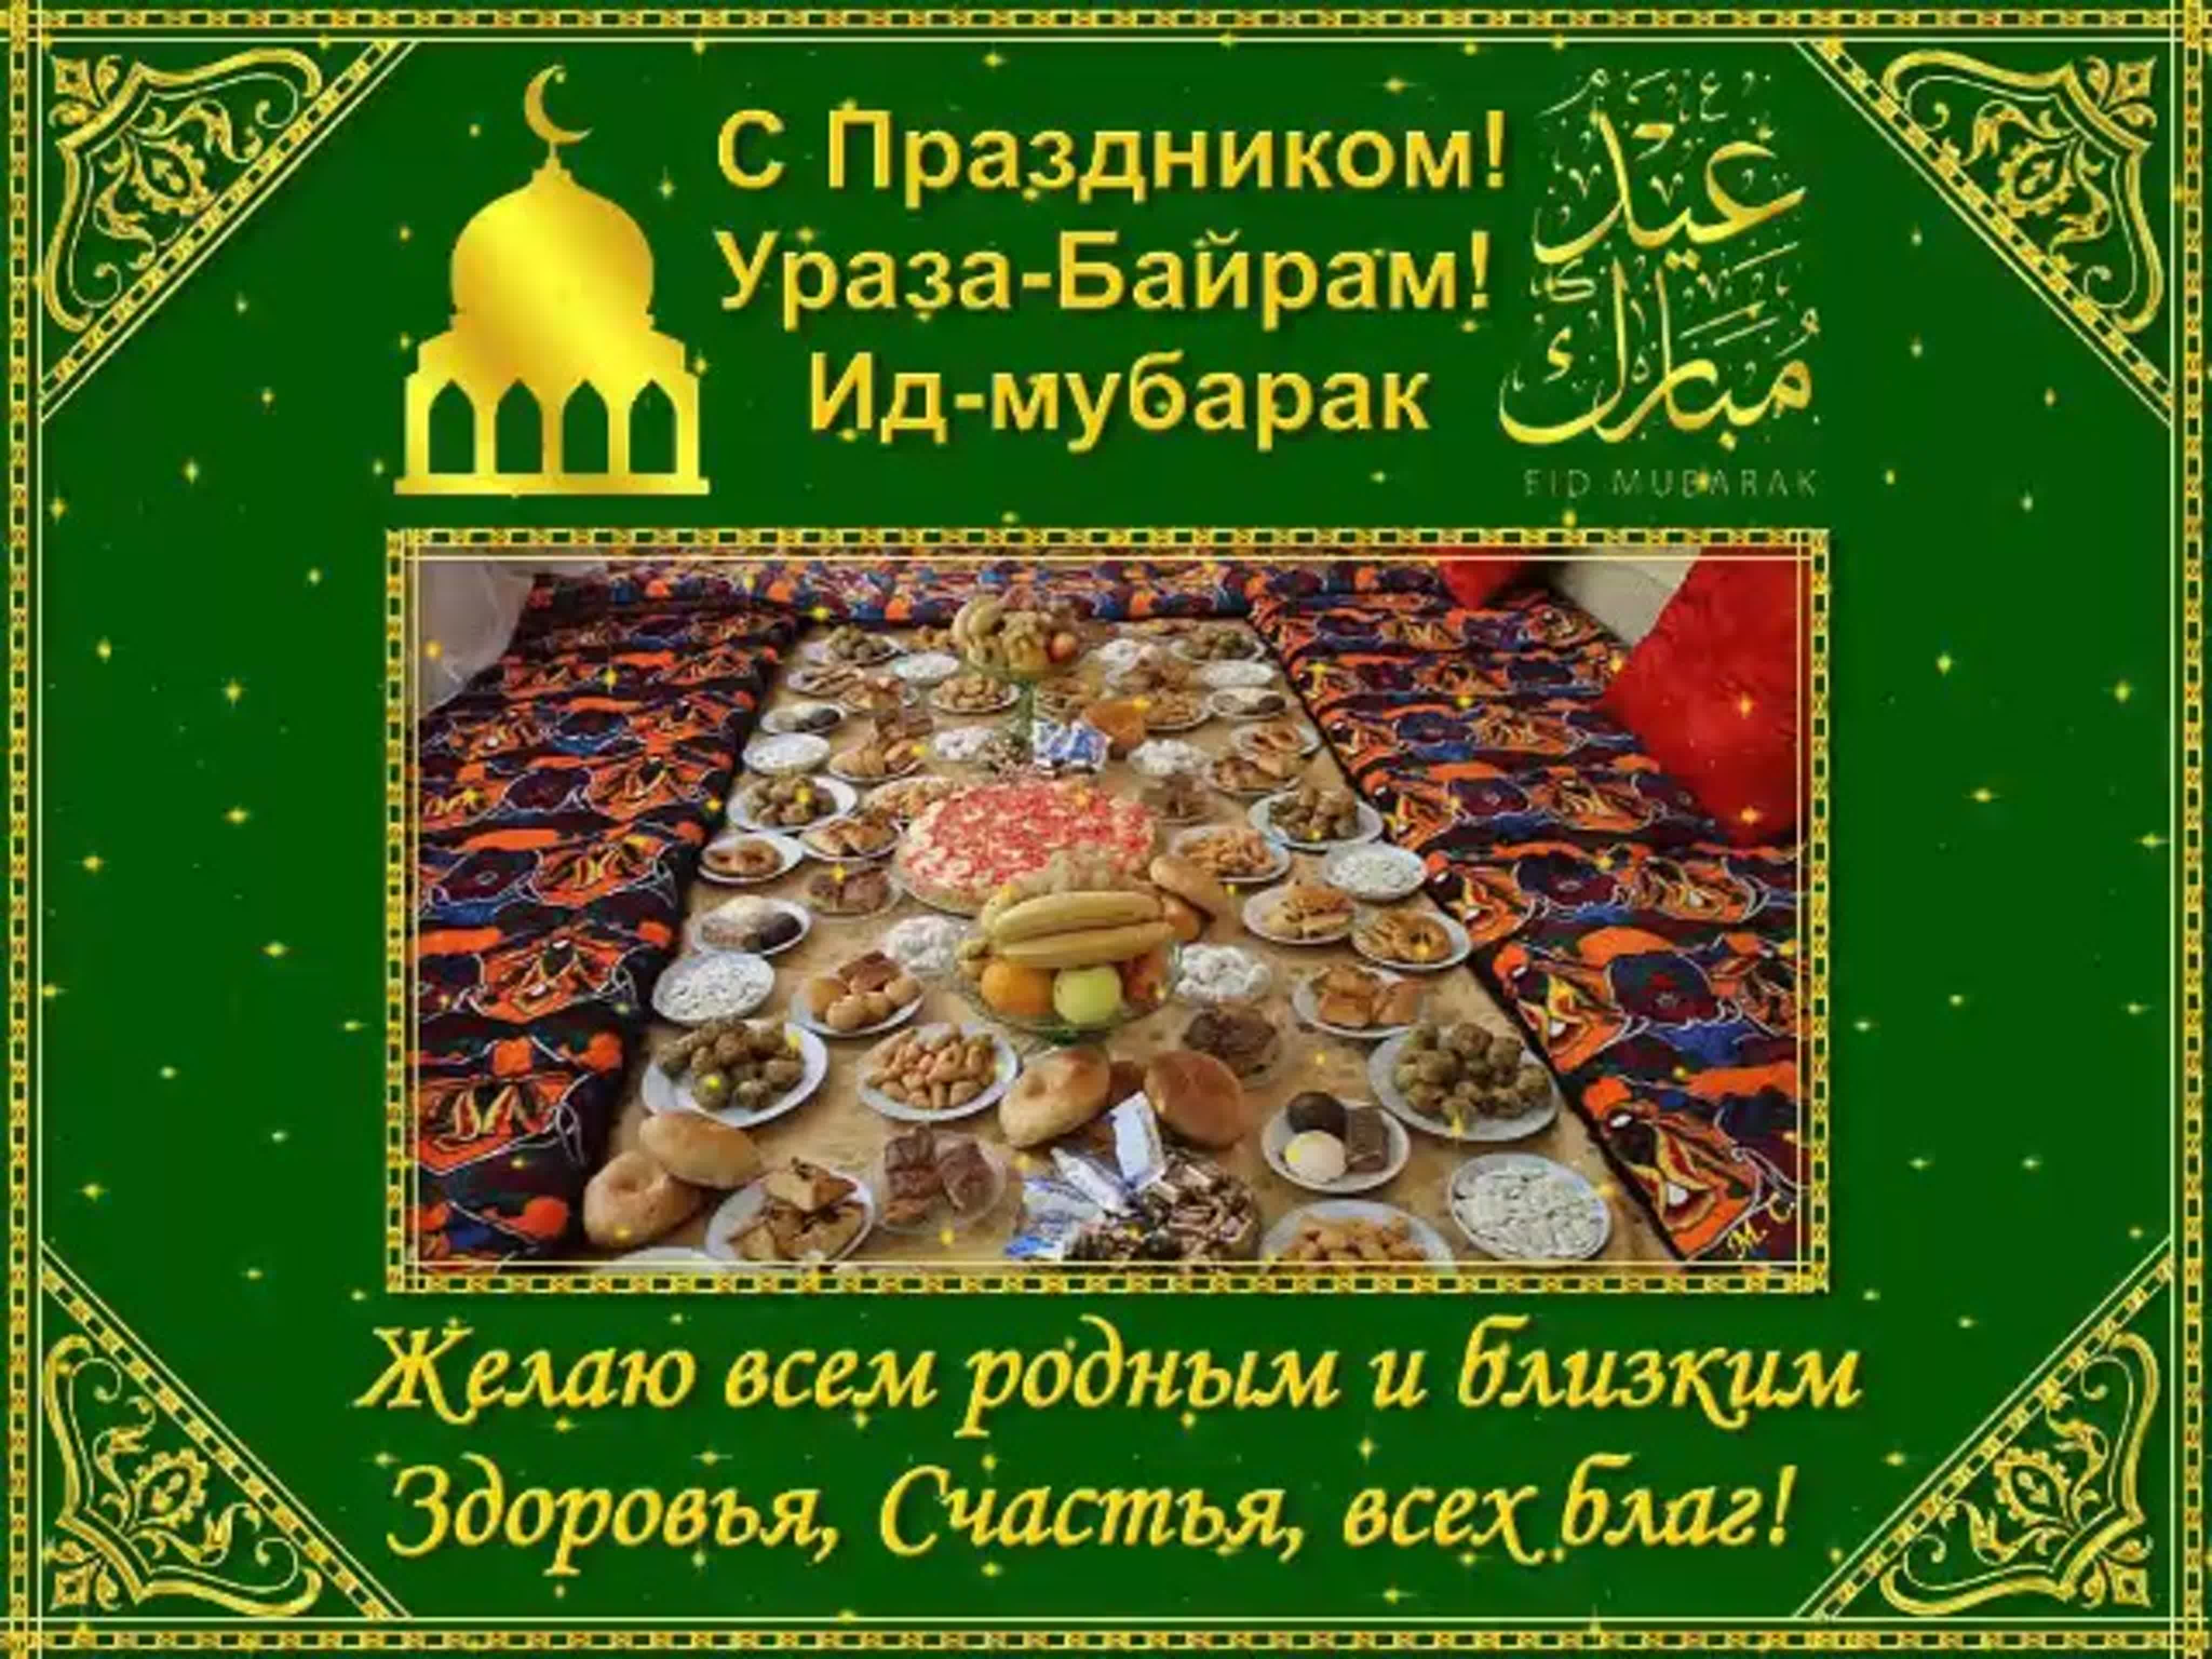 Красивое поздравление с Ураза-байрам 2019 на русском языке в стихах